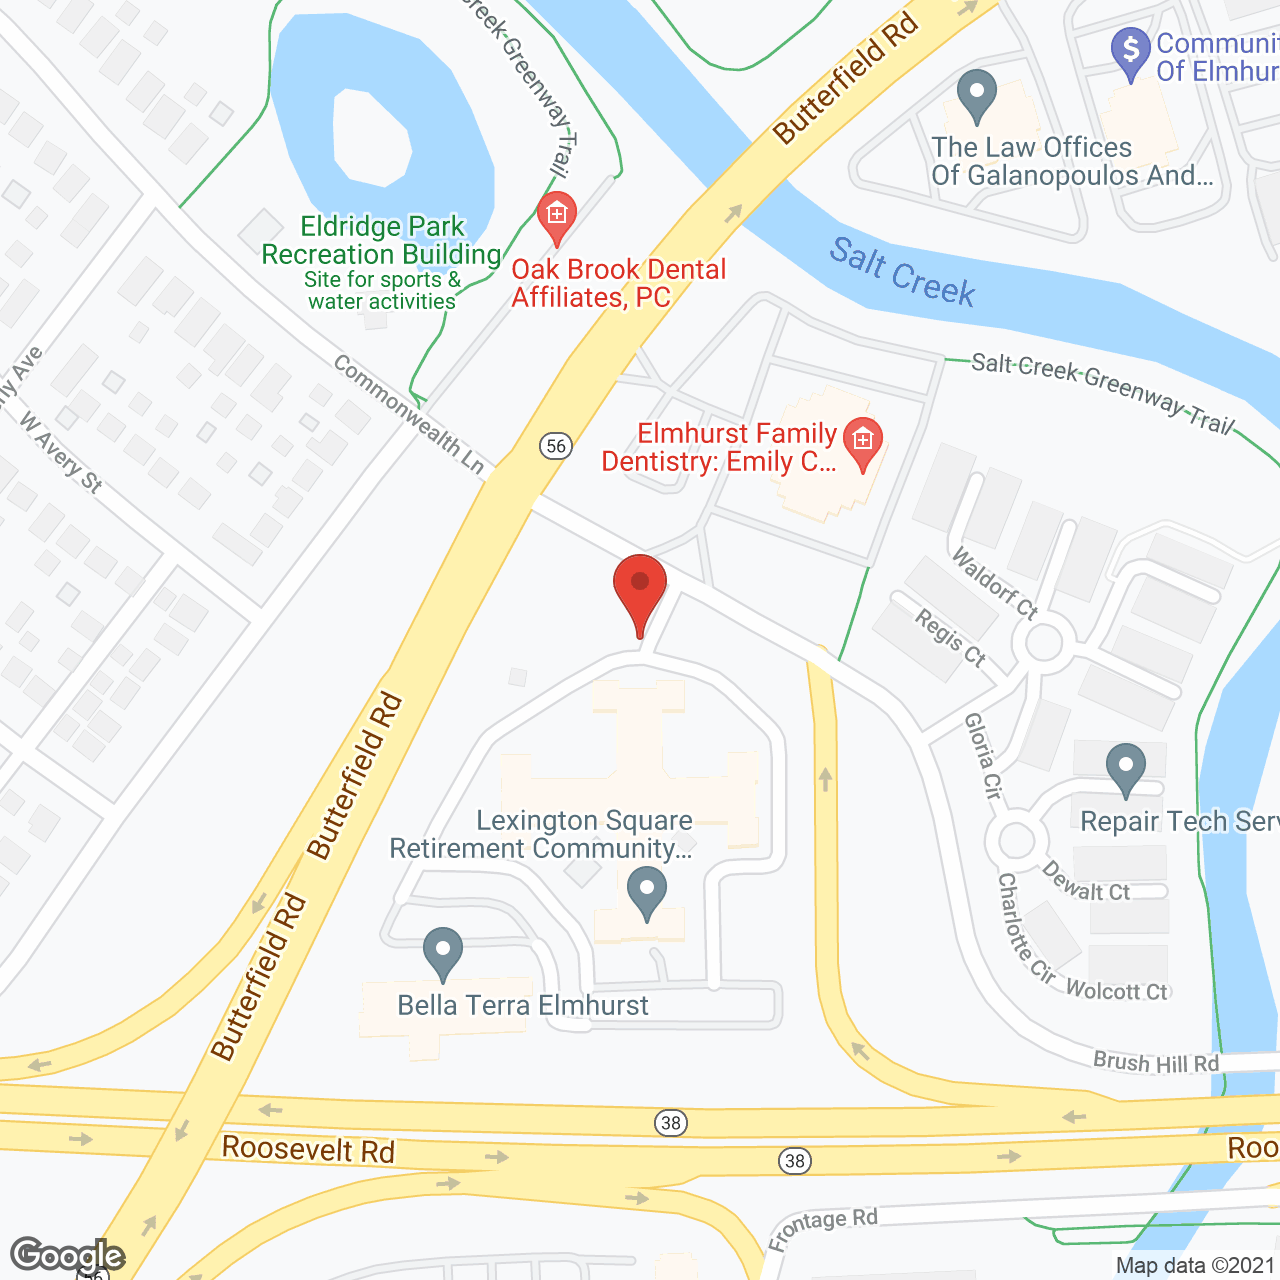 The Roosevelt at Salt Creek in google map